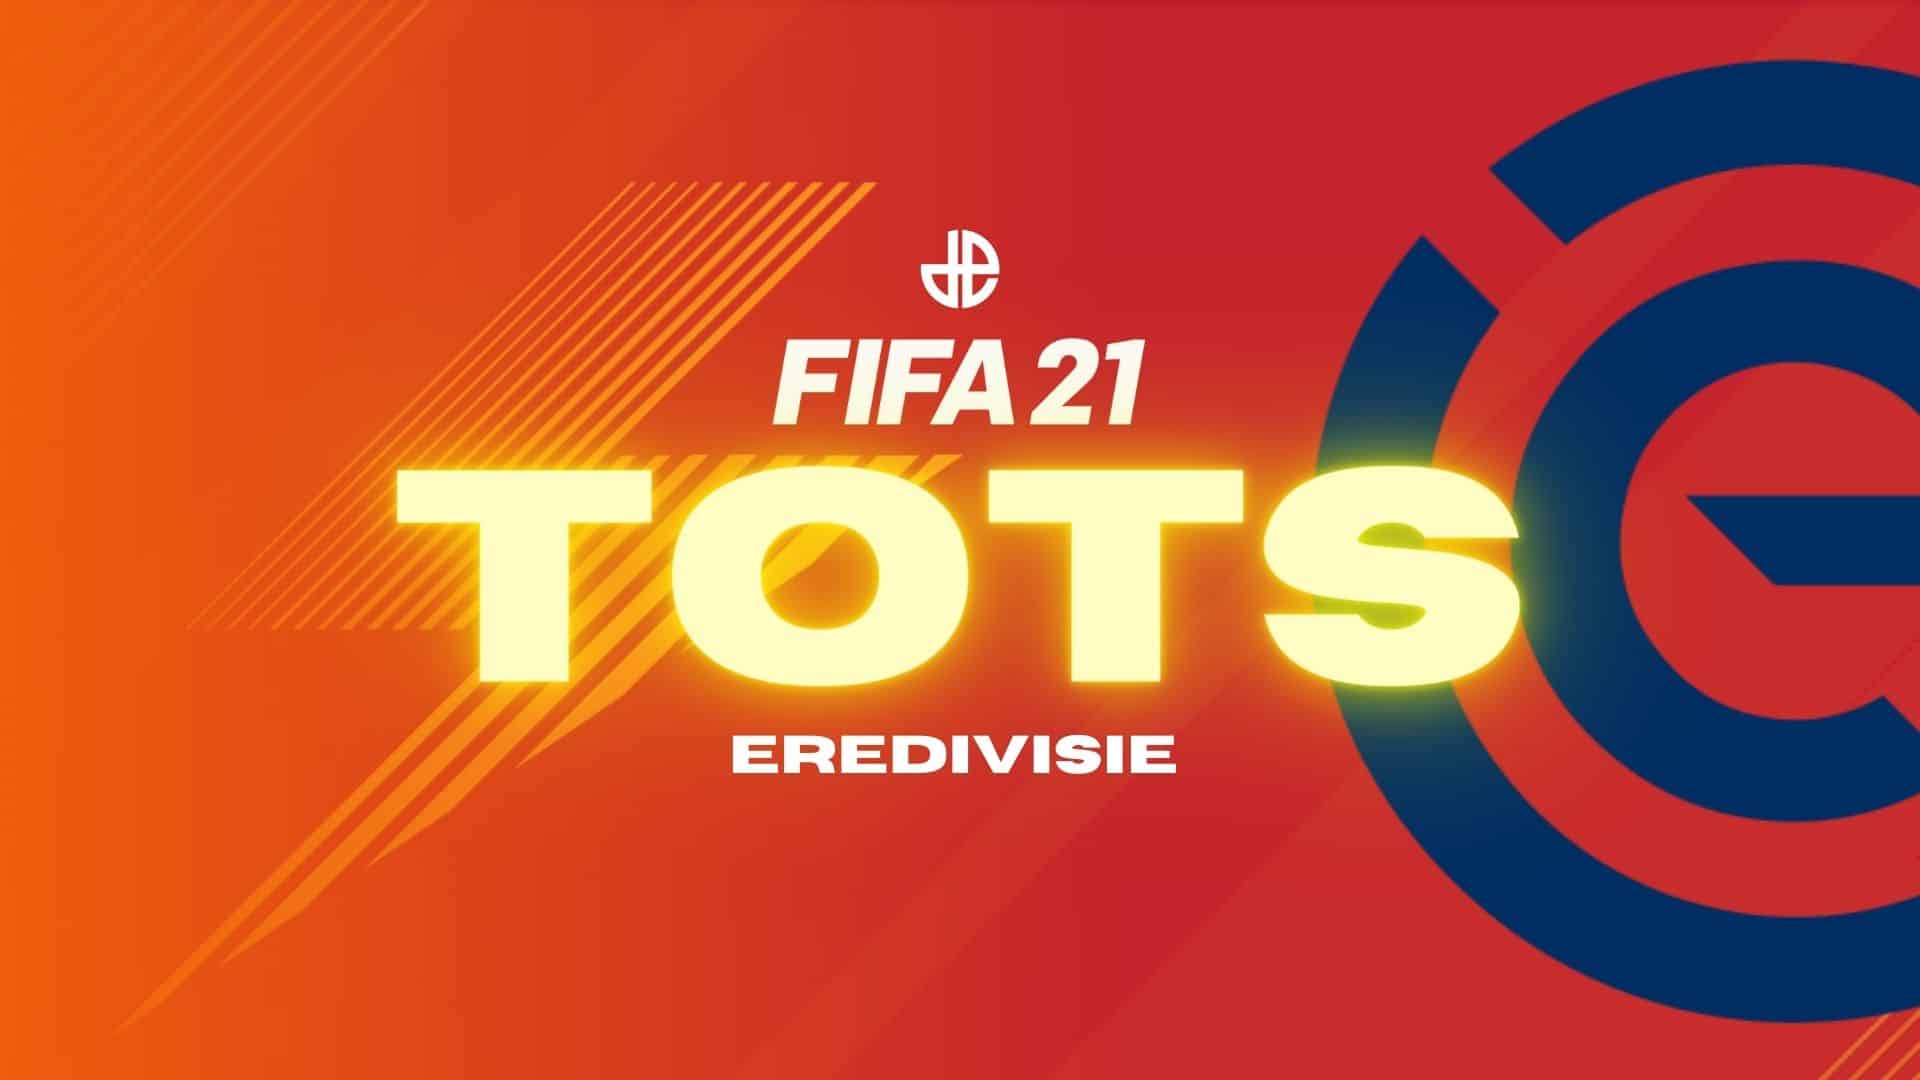 FIFA 21 Eredivisie TOTS